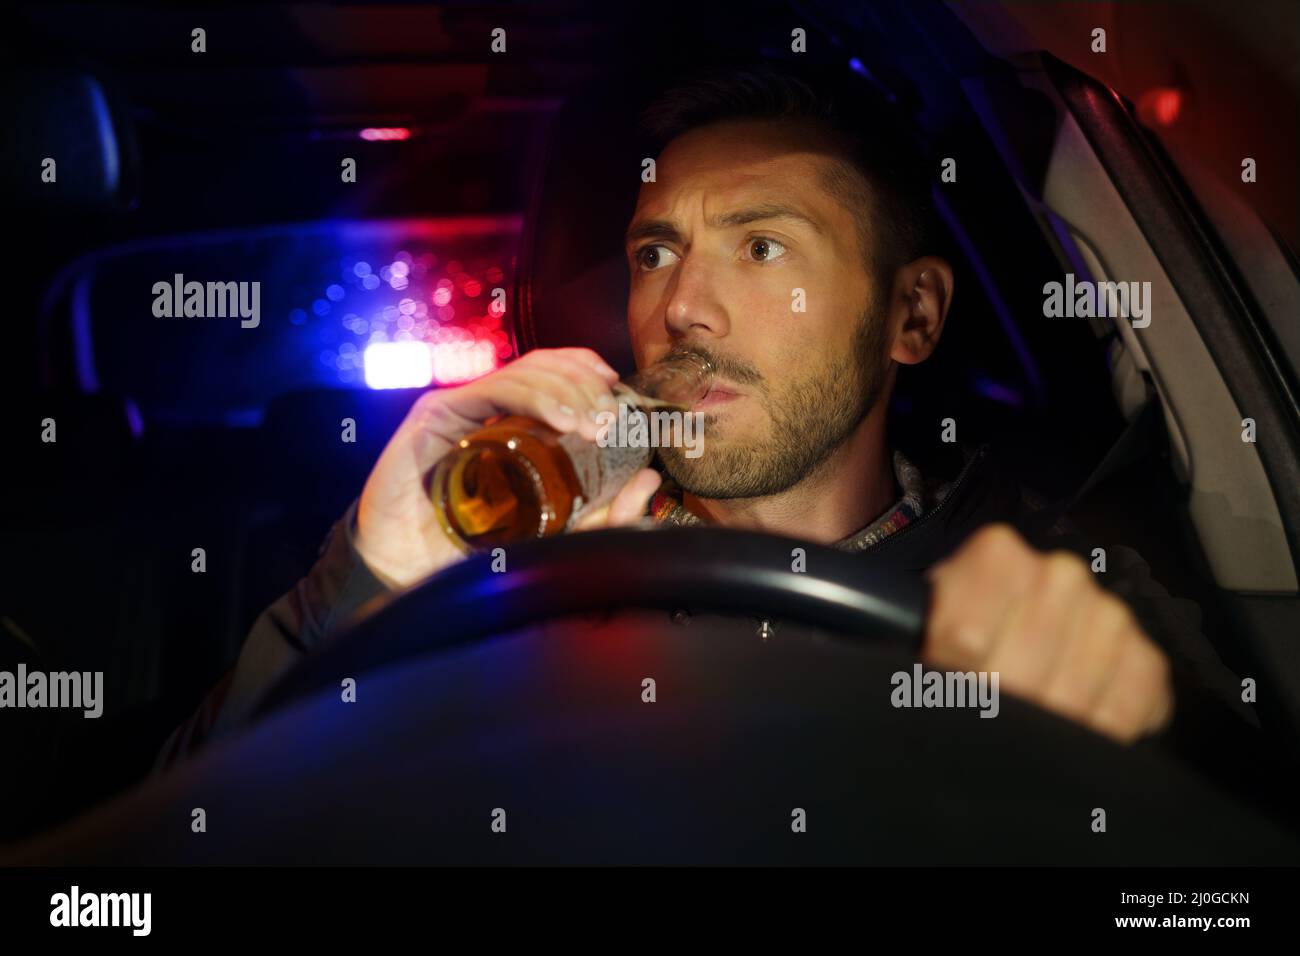 La police a arrêté la voiture avec un conducteur ivre à l'intérieur. Homme ivre qui boit de l'alcool en voiture. Conducteur sous influence d'alcool Banque D'Images